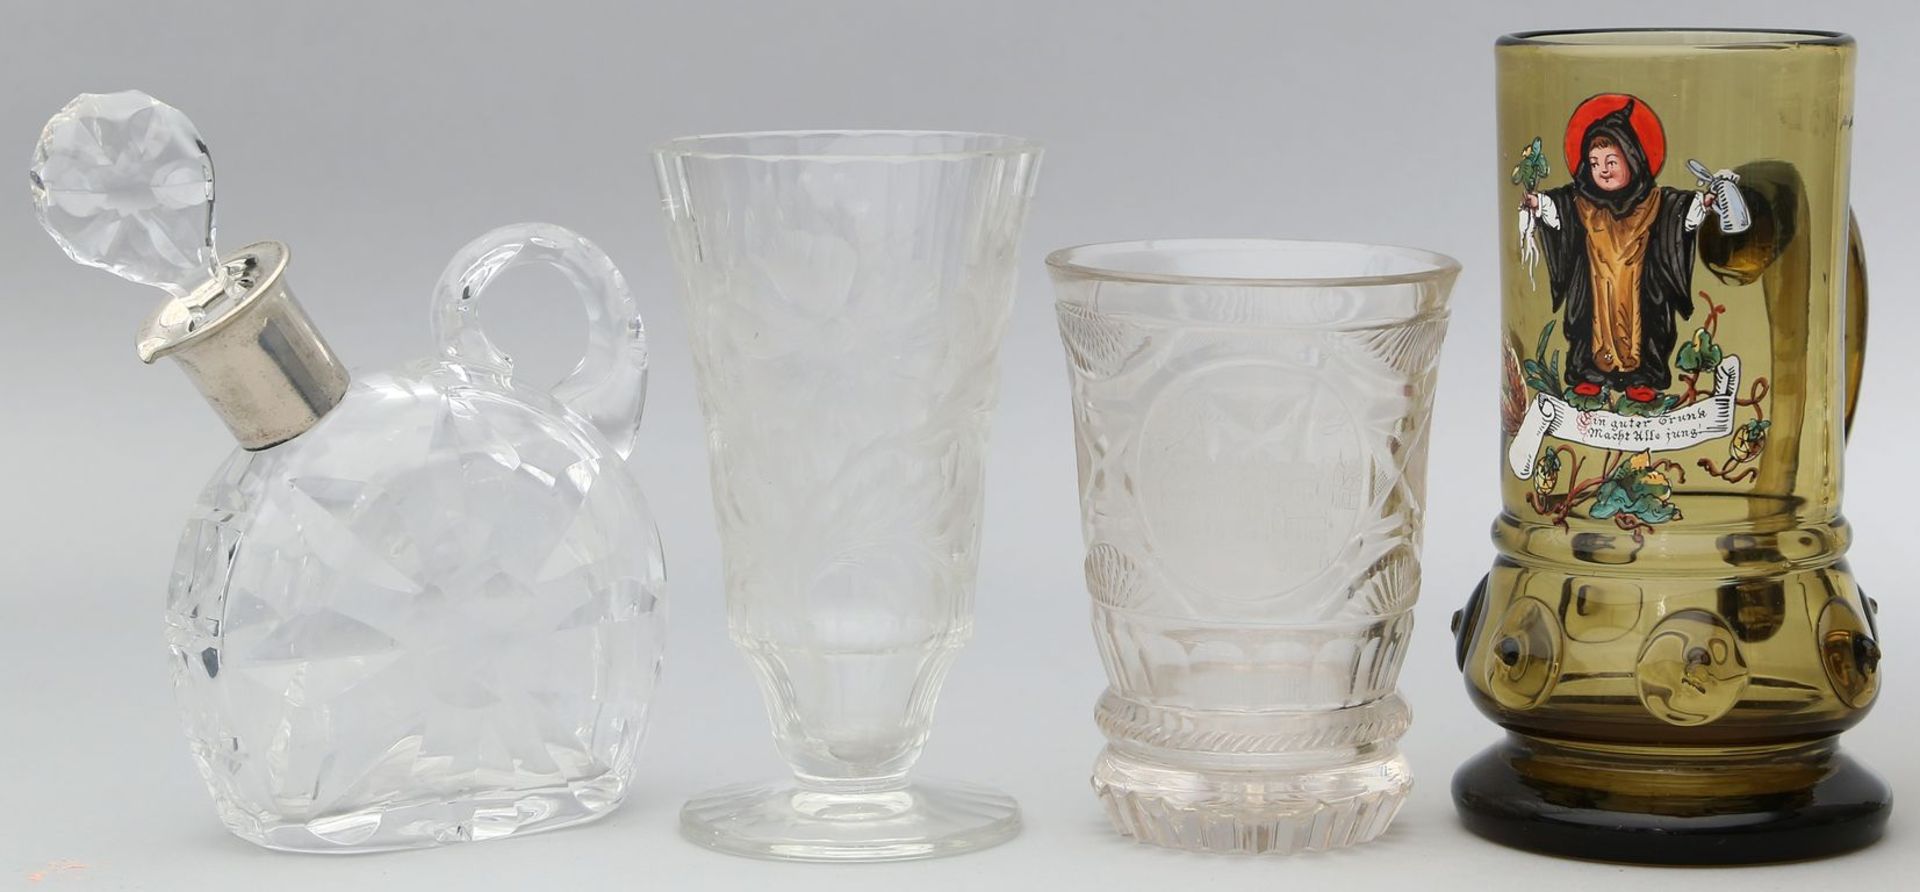 4 Teile Glas: Karaffe mit Stopfen sowie 800/000 Silbermontage, Historismus-Henkelbecher in der Art